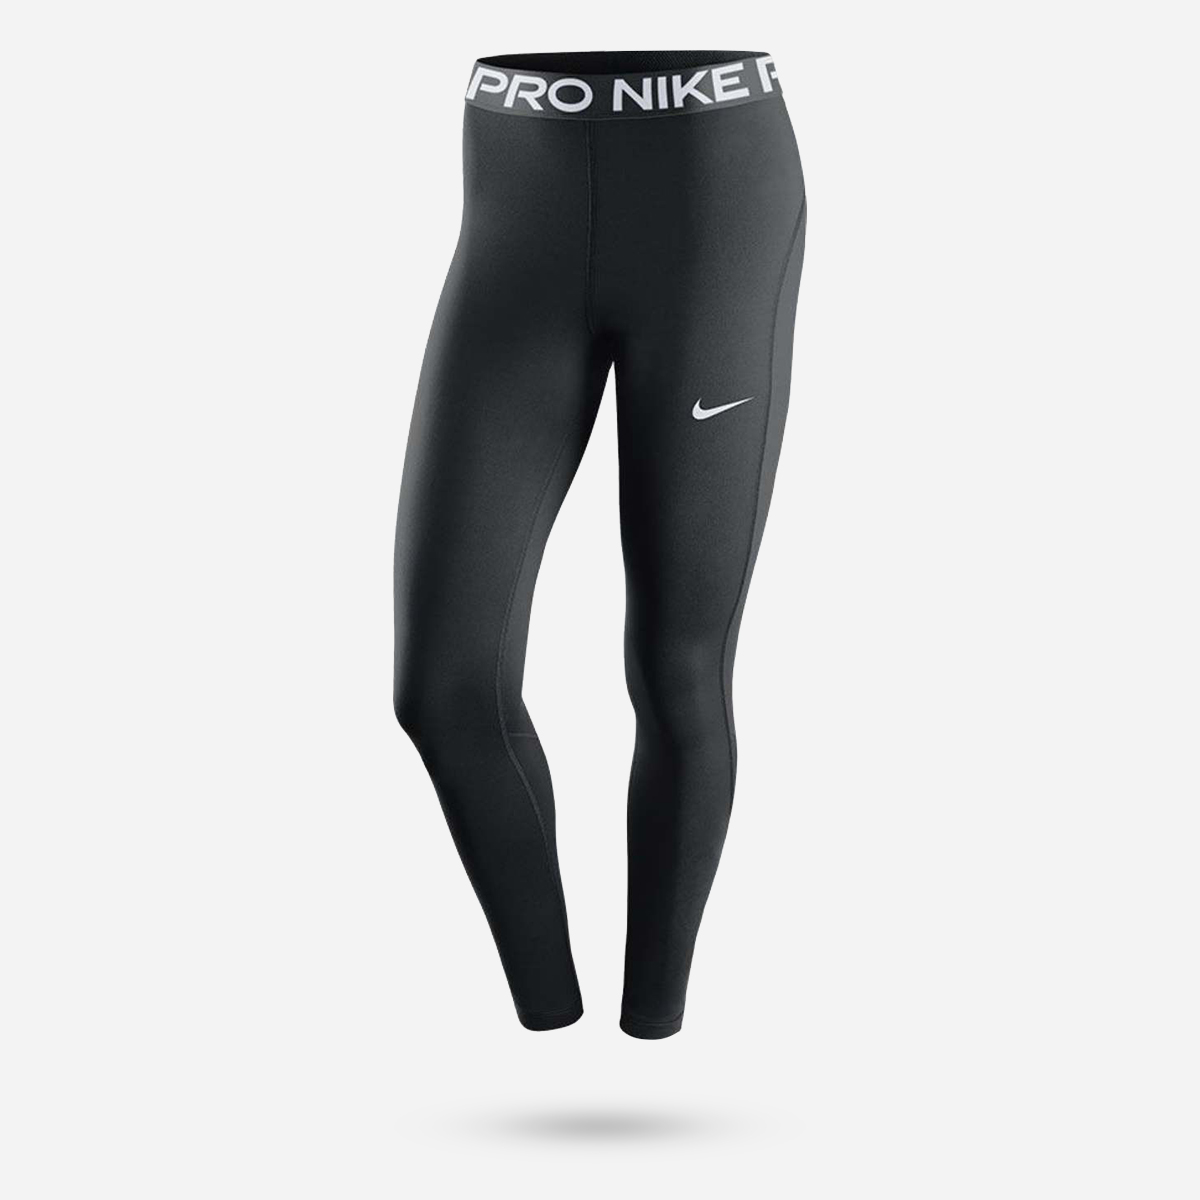 Afgeschaft Zwaaien Bewonderenswaardig Nike Pro Women's Tights | S | 205071